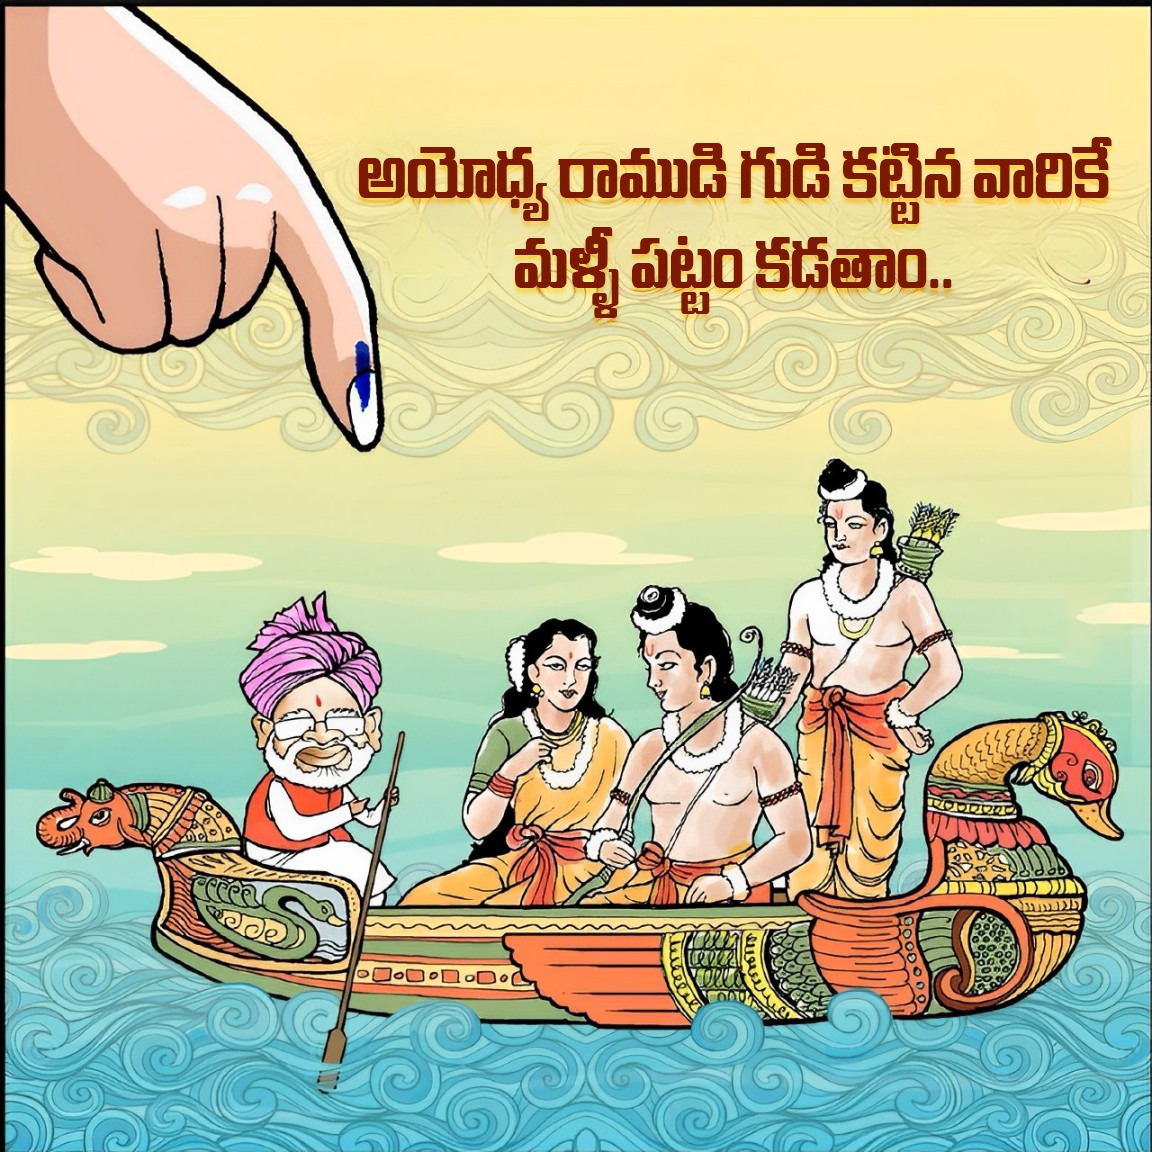 అయోధ్య రాముడి గుడి కట్టిన వారికే మళ్ళీ పట్టం కడతాం.. 

#BJP4Telangana #Vote4BJP #MODI #ParliamentElection #KishanReddy #TelanganaPolitics #TelanganaNews #Update #Vote4BJP #election #pmmodi #new #reels